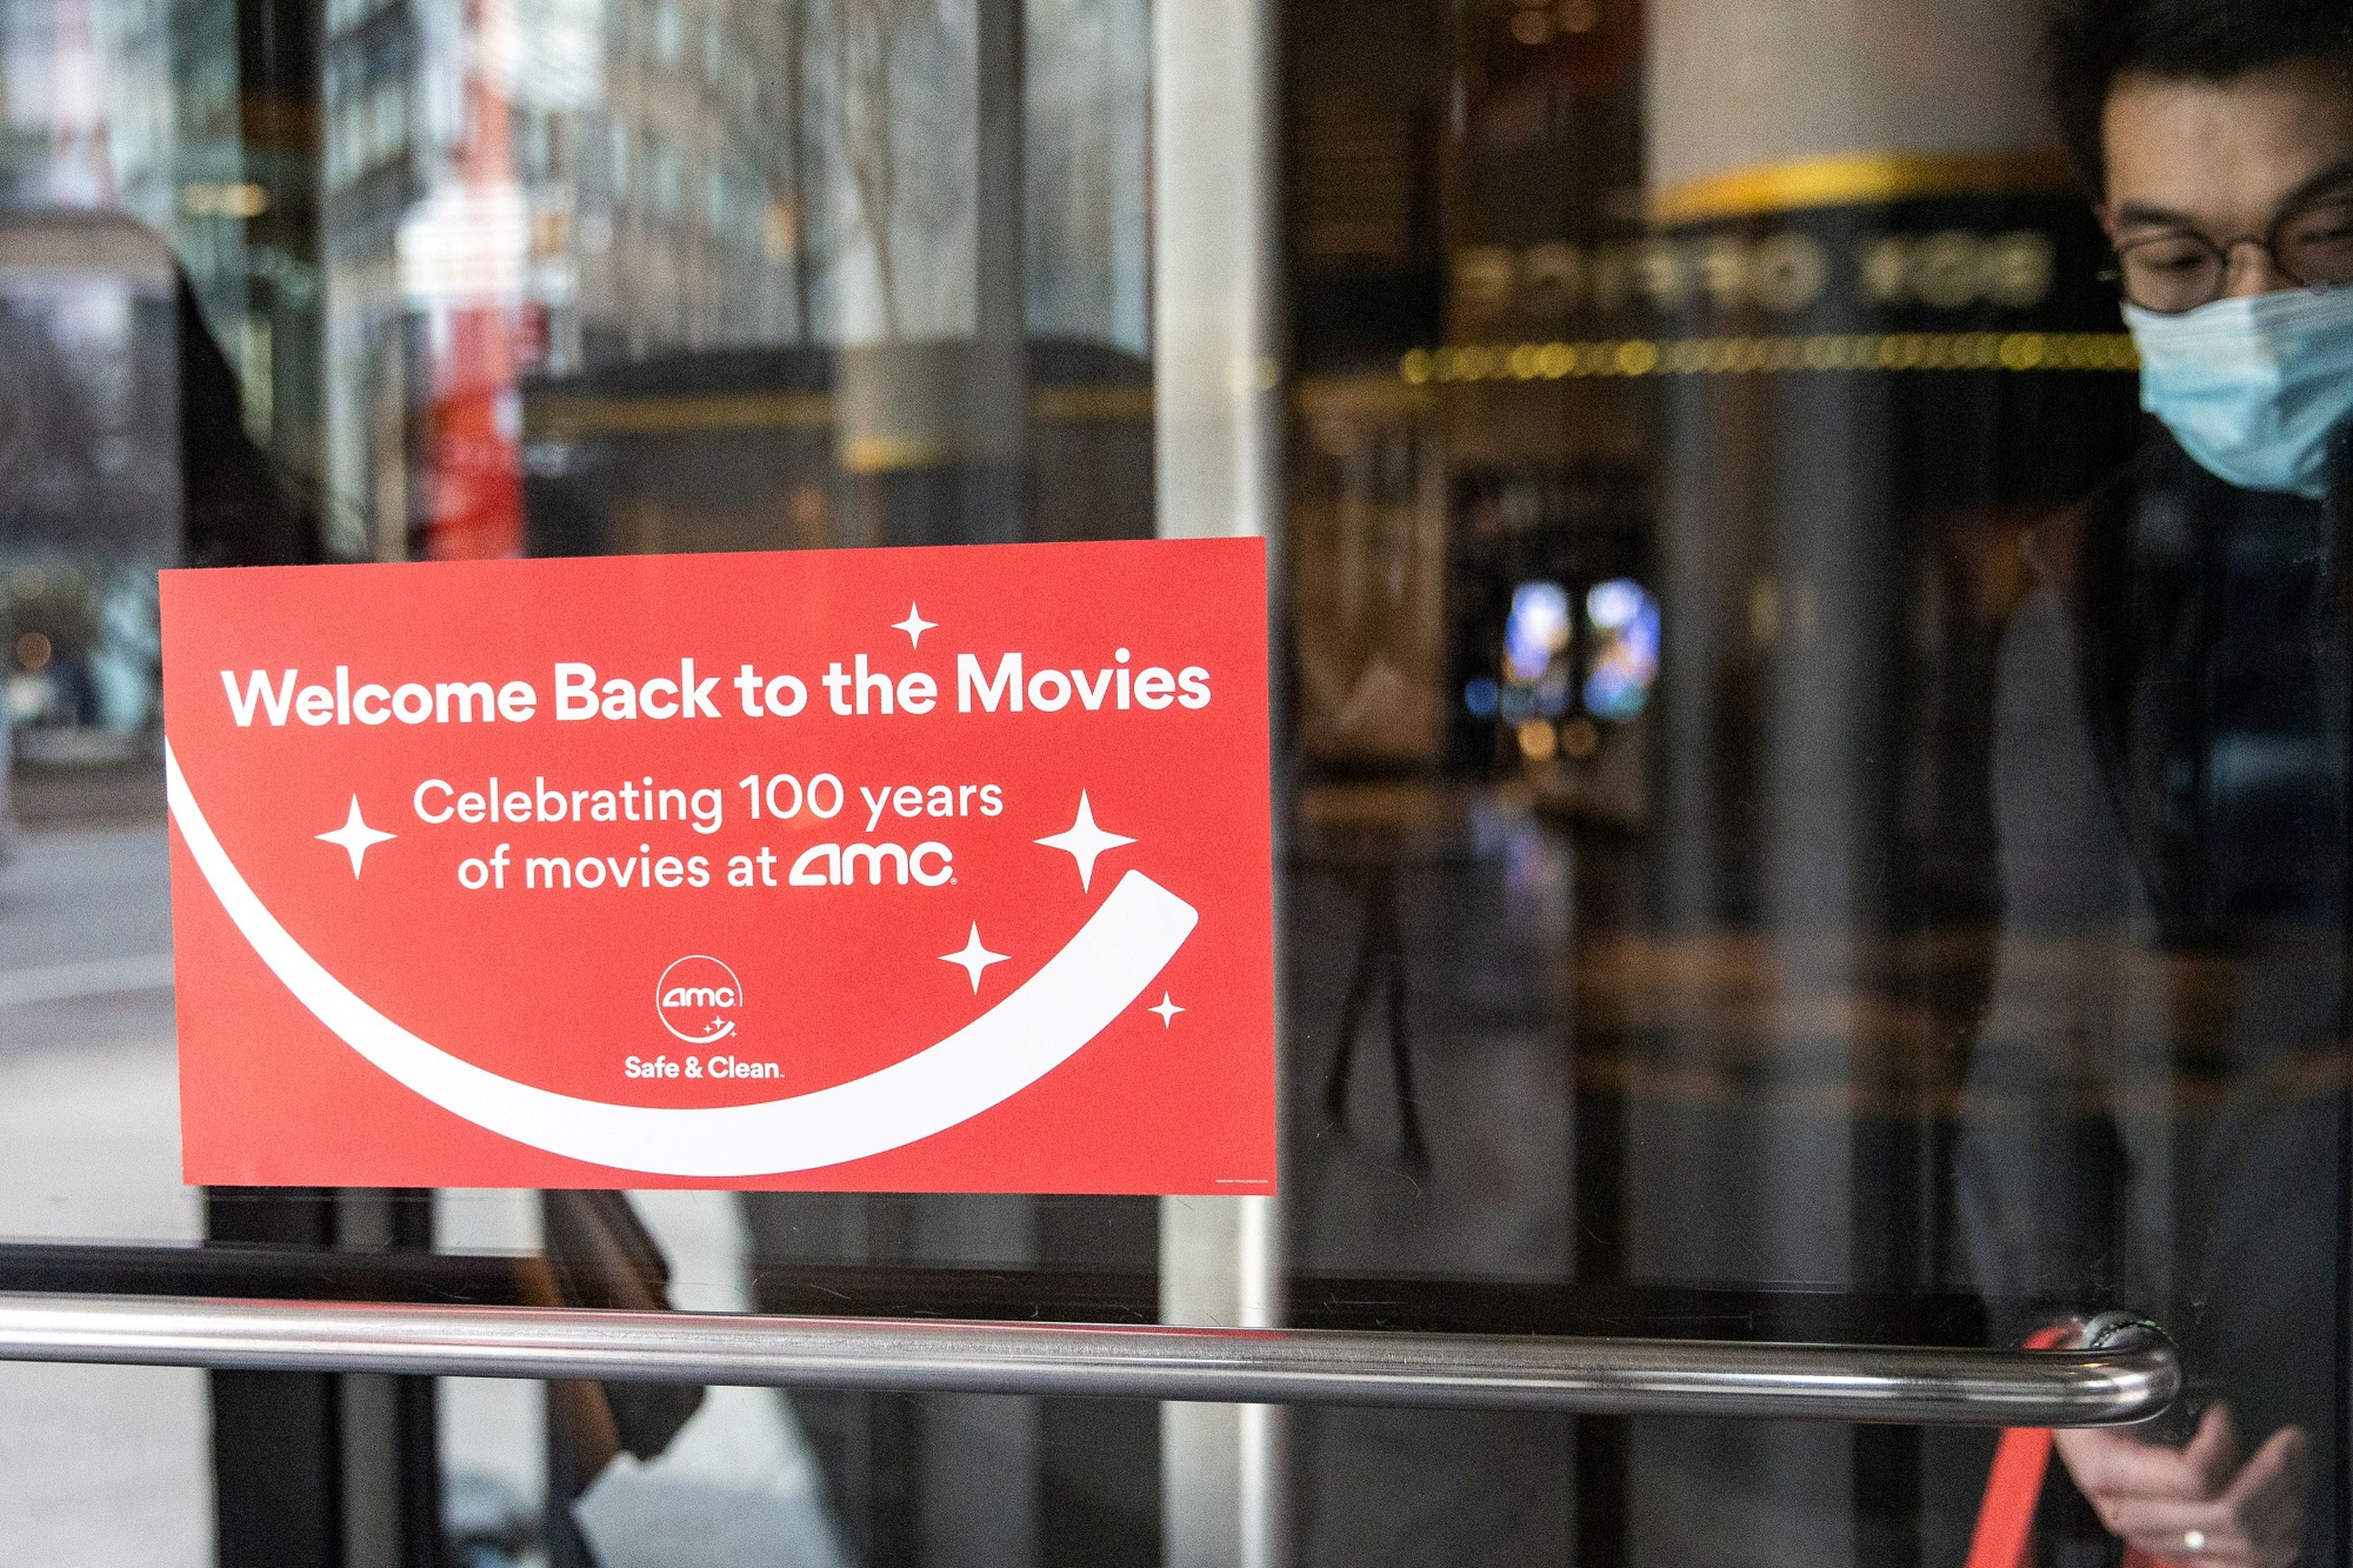 Uno de los cines de AMC reabierto en Nueva York (EEUU)